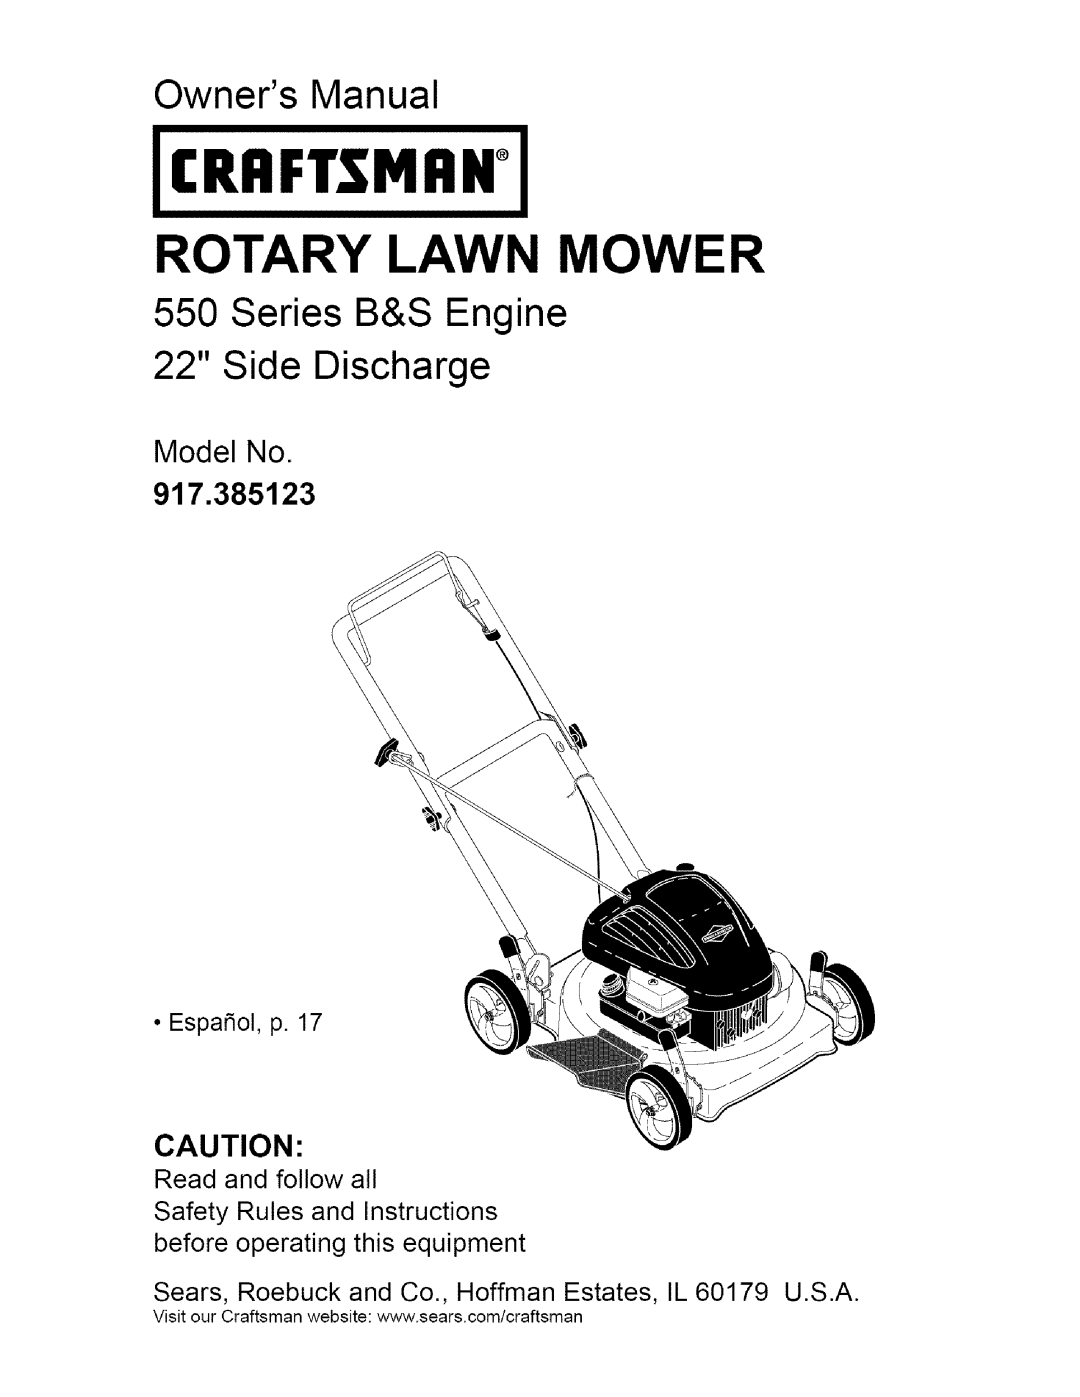 Craftsman 917.385123 owner manual Rrftsmrn 